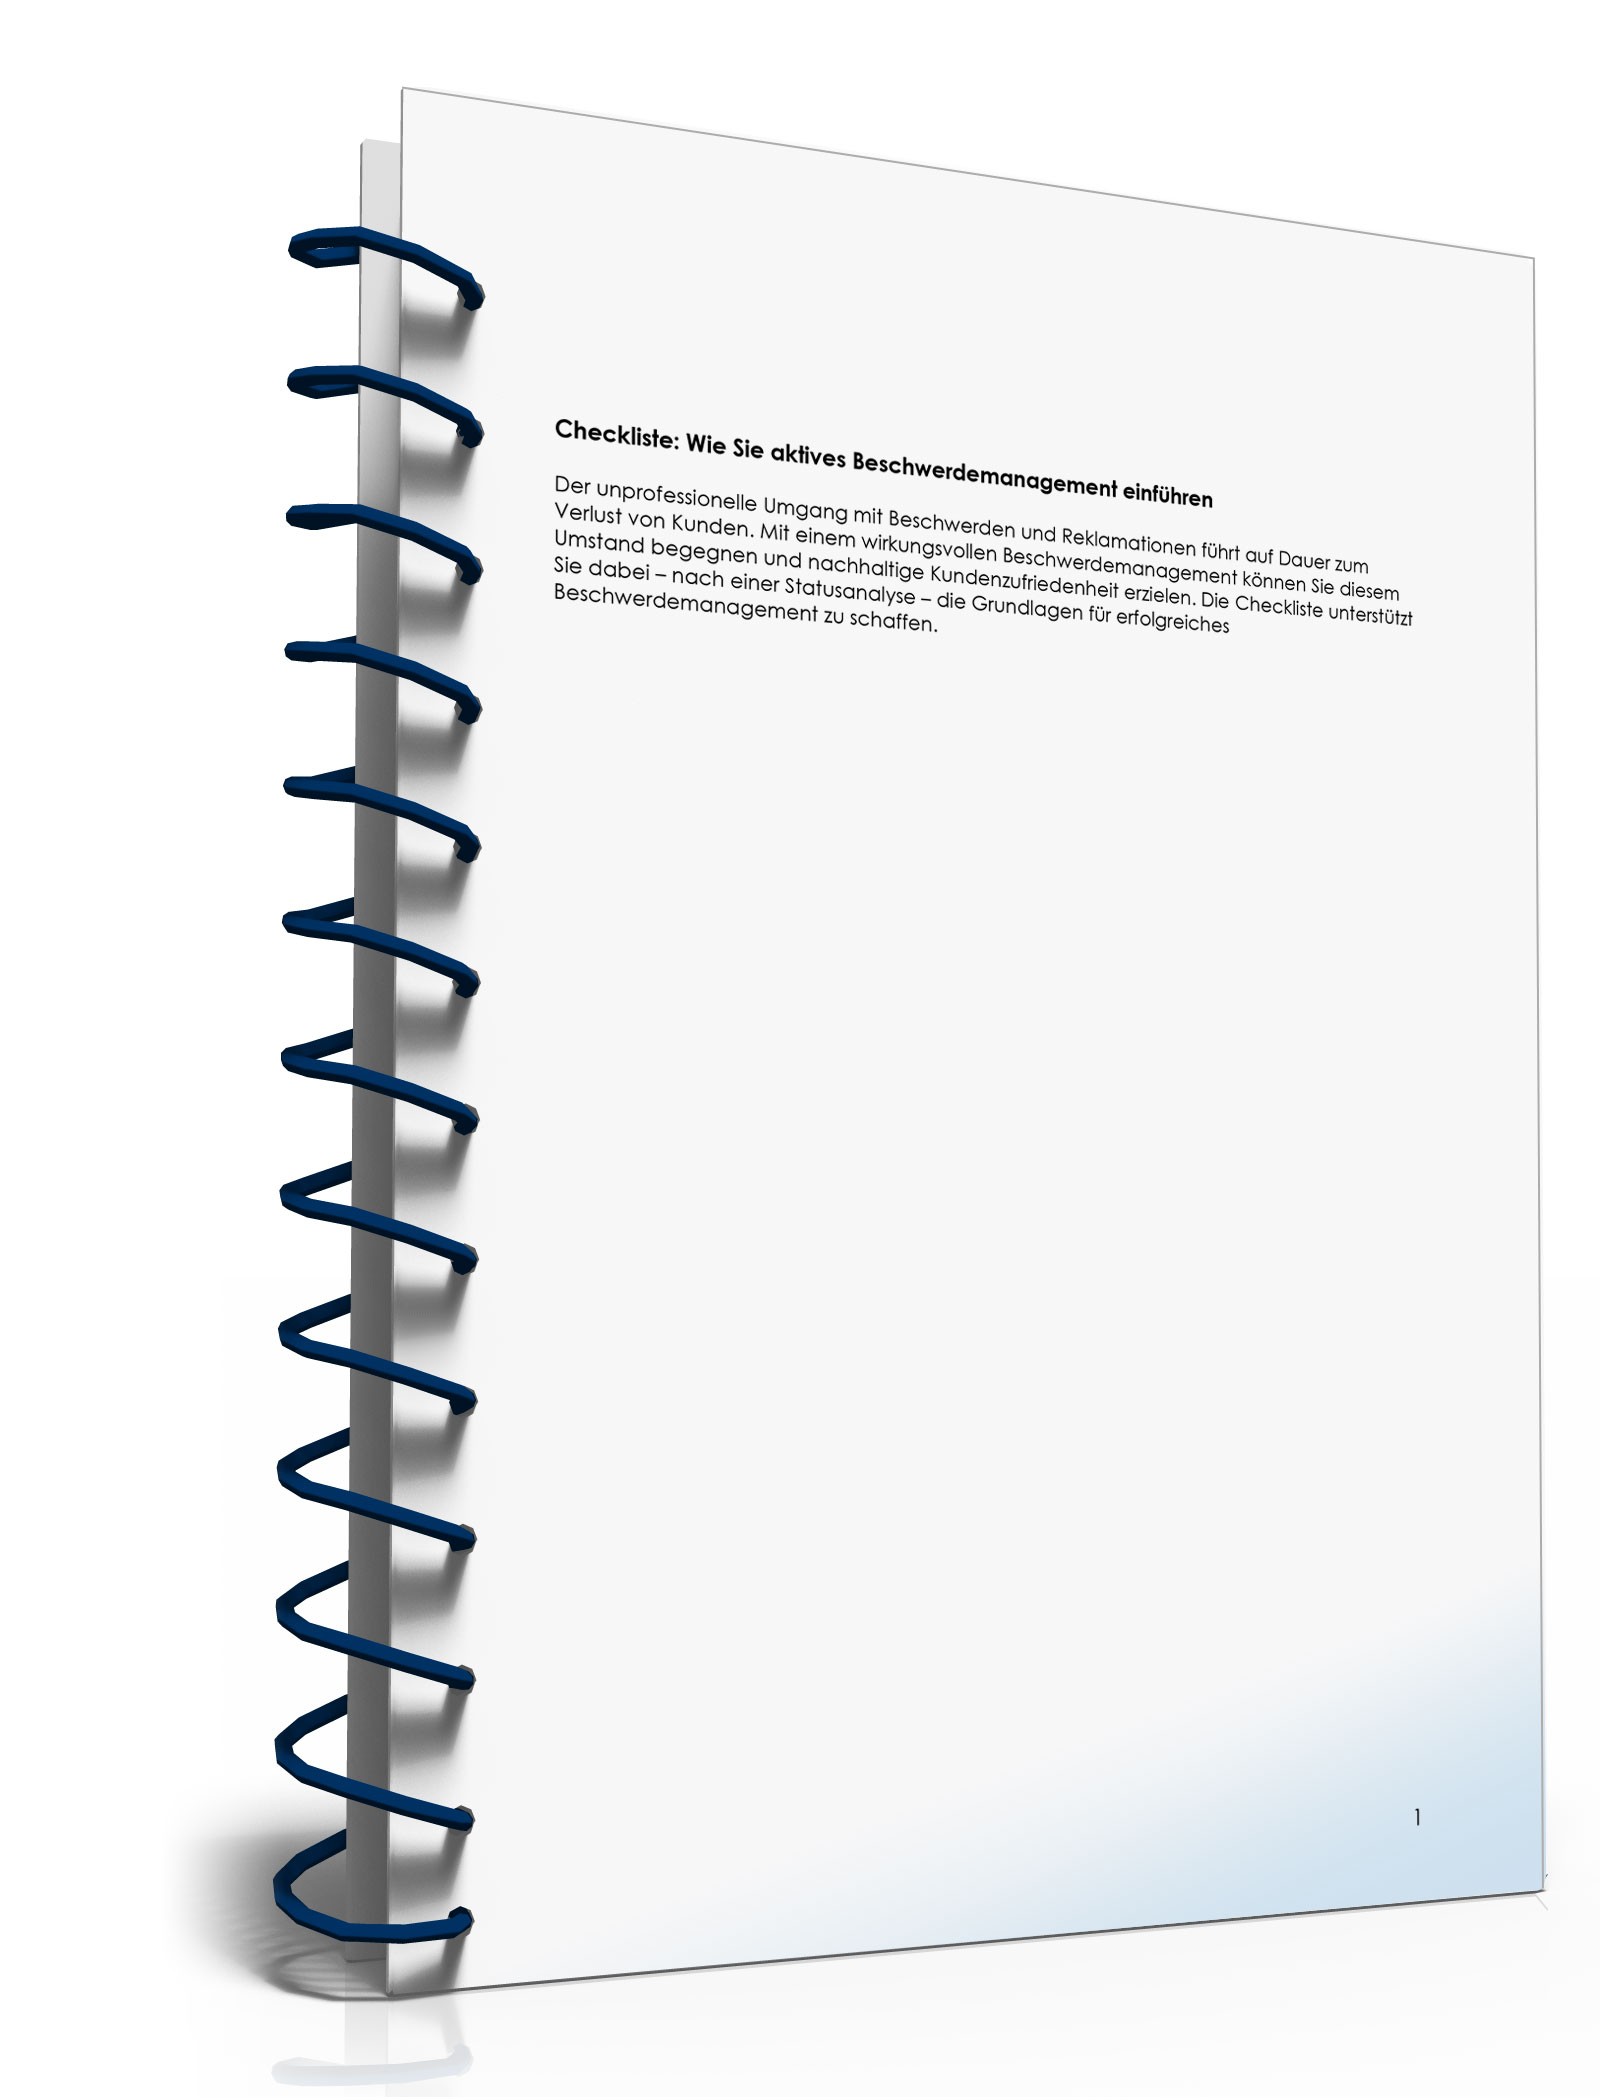 Hauptbild des Produkts: Checkliste - Beschwerdemanagement